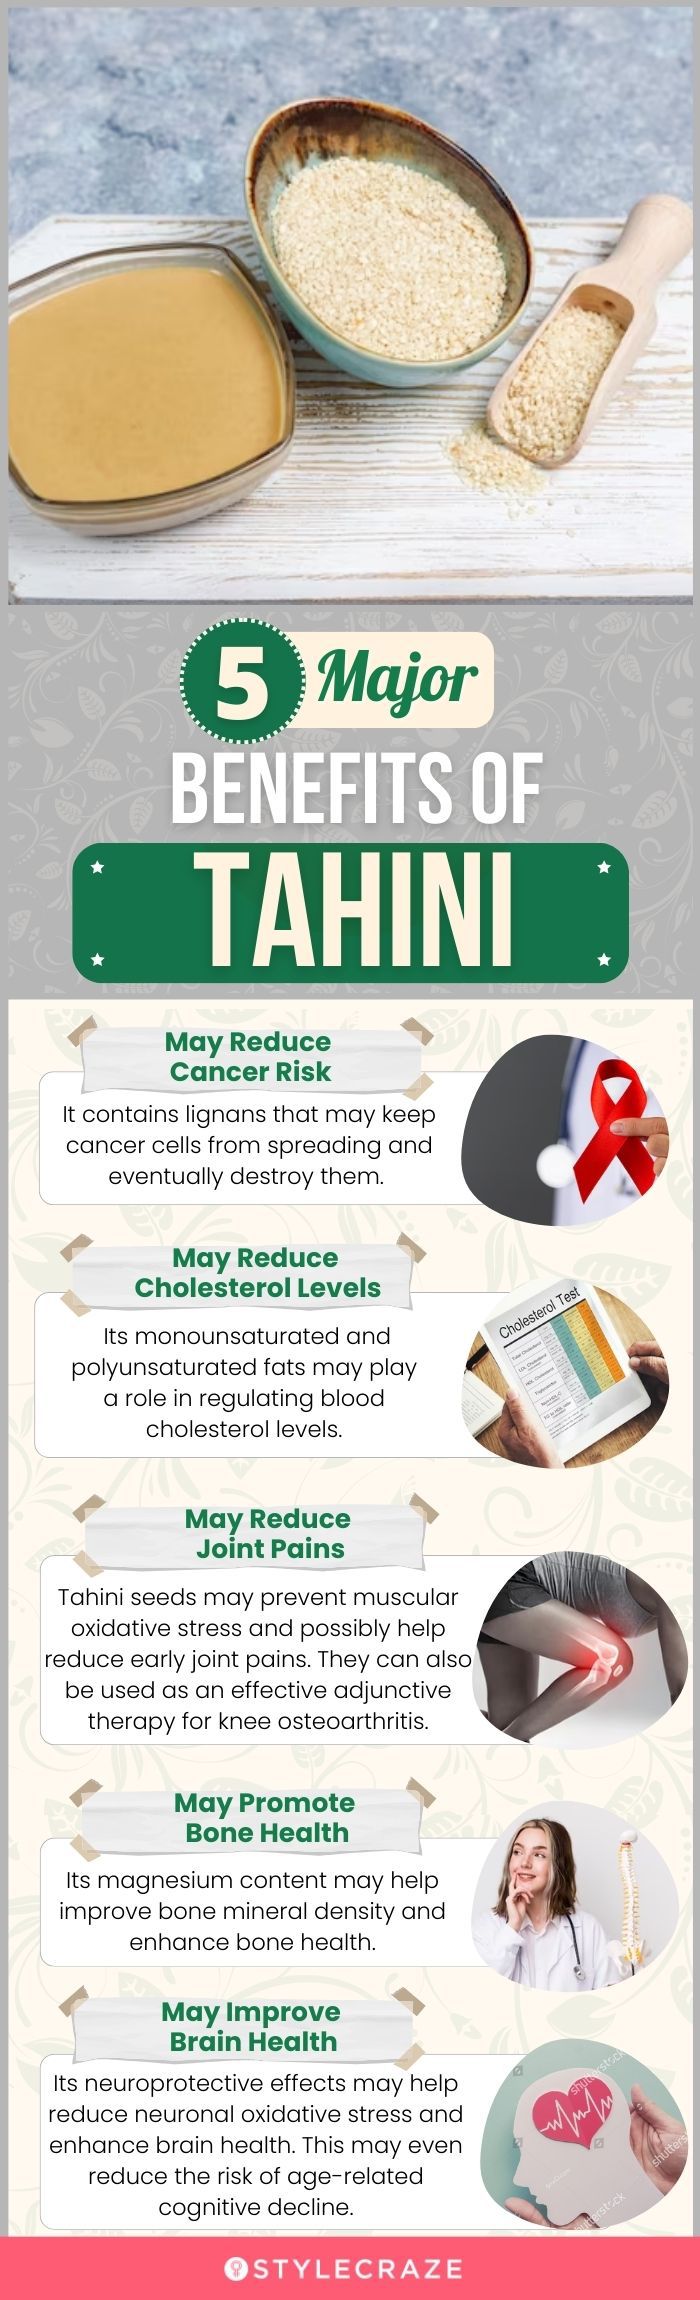 9 Surprising Benefits of Tahini